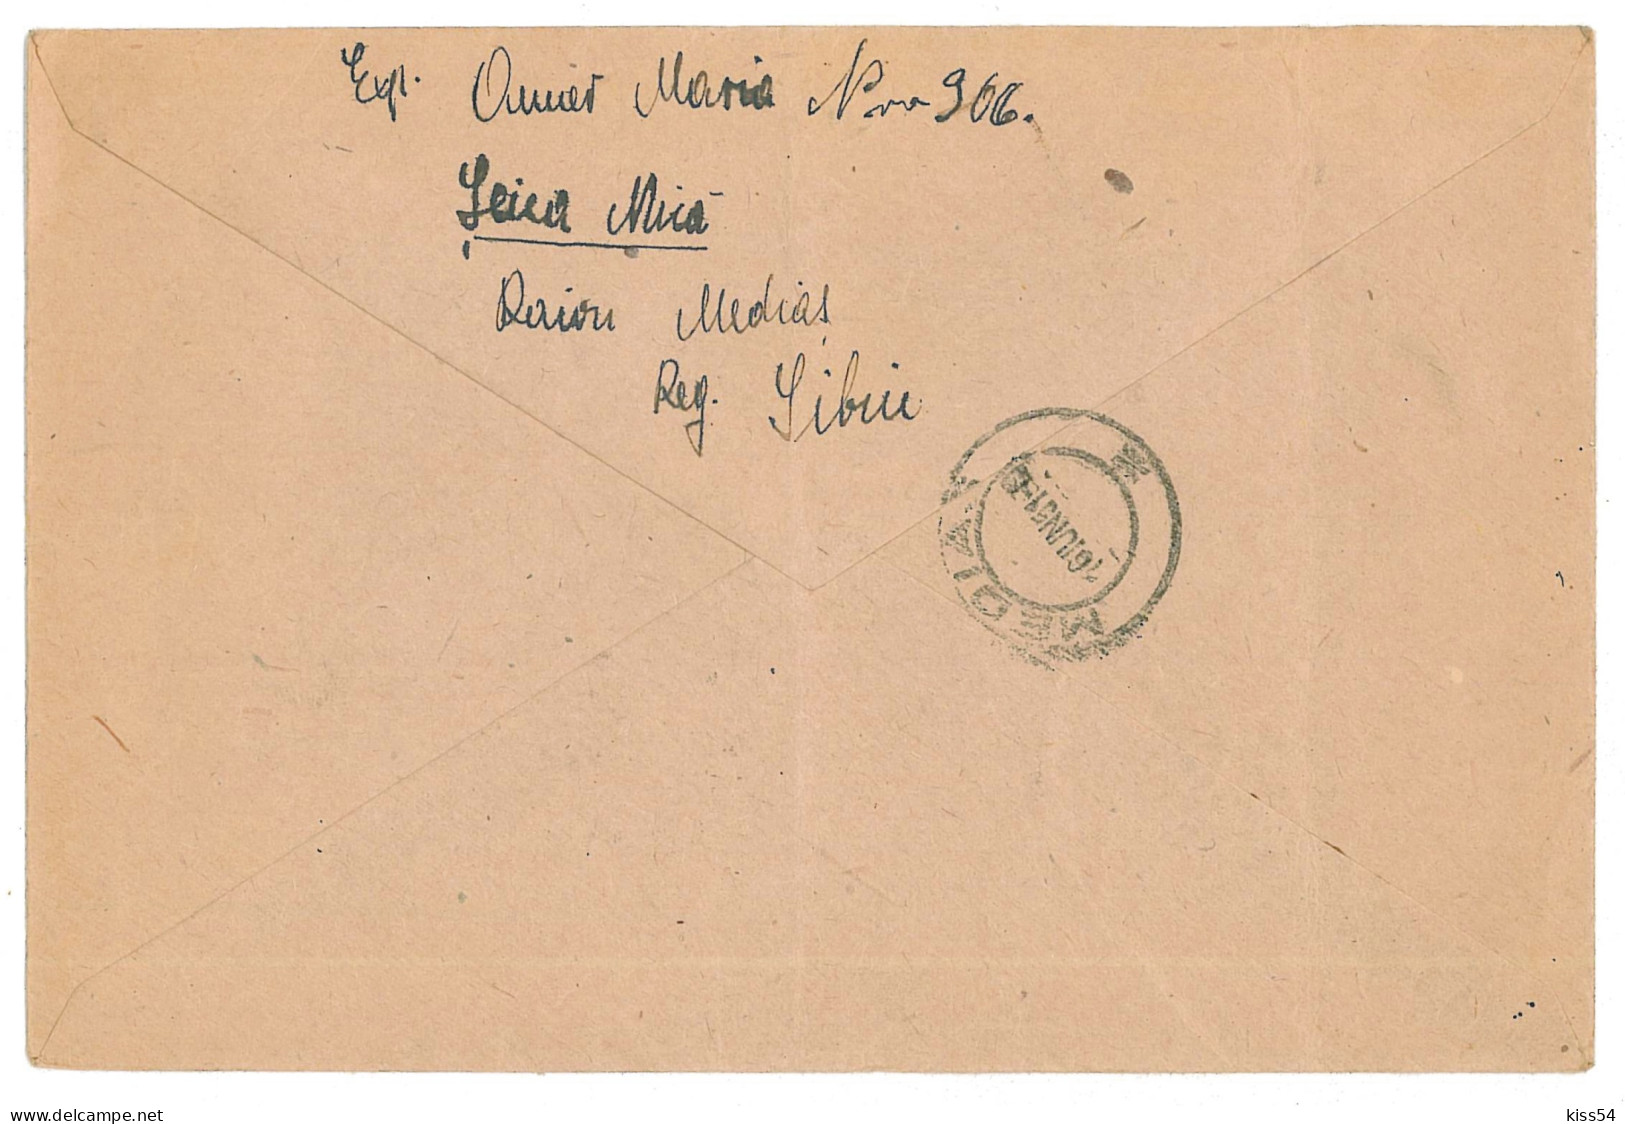 CIP 18 - 204-a SEICA-MICA, Sibiu - Cover - Used - 1951 - Brieven En Documenten